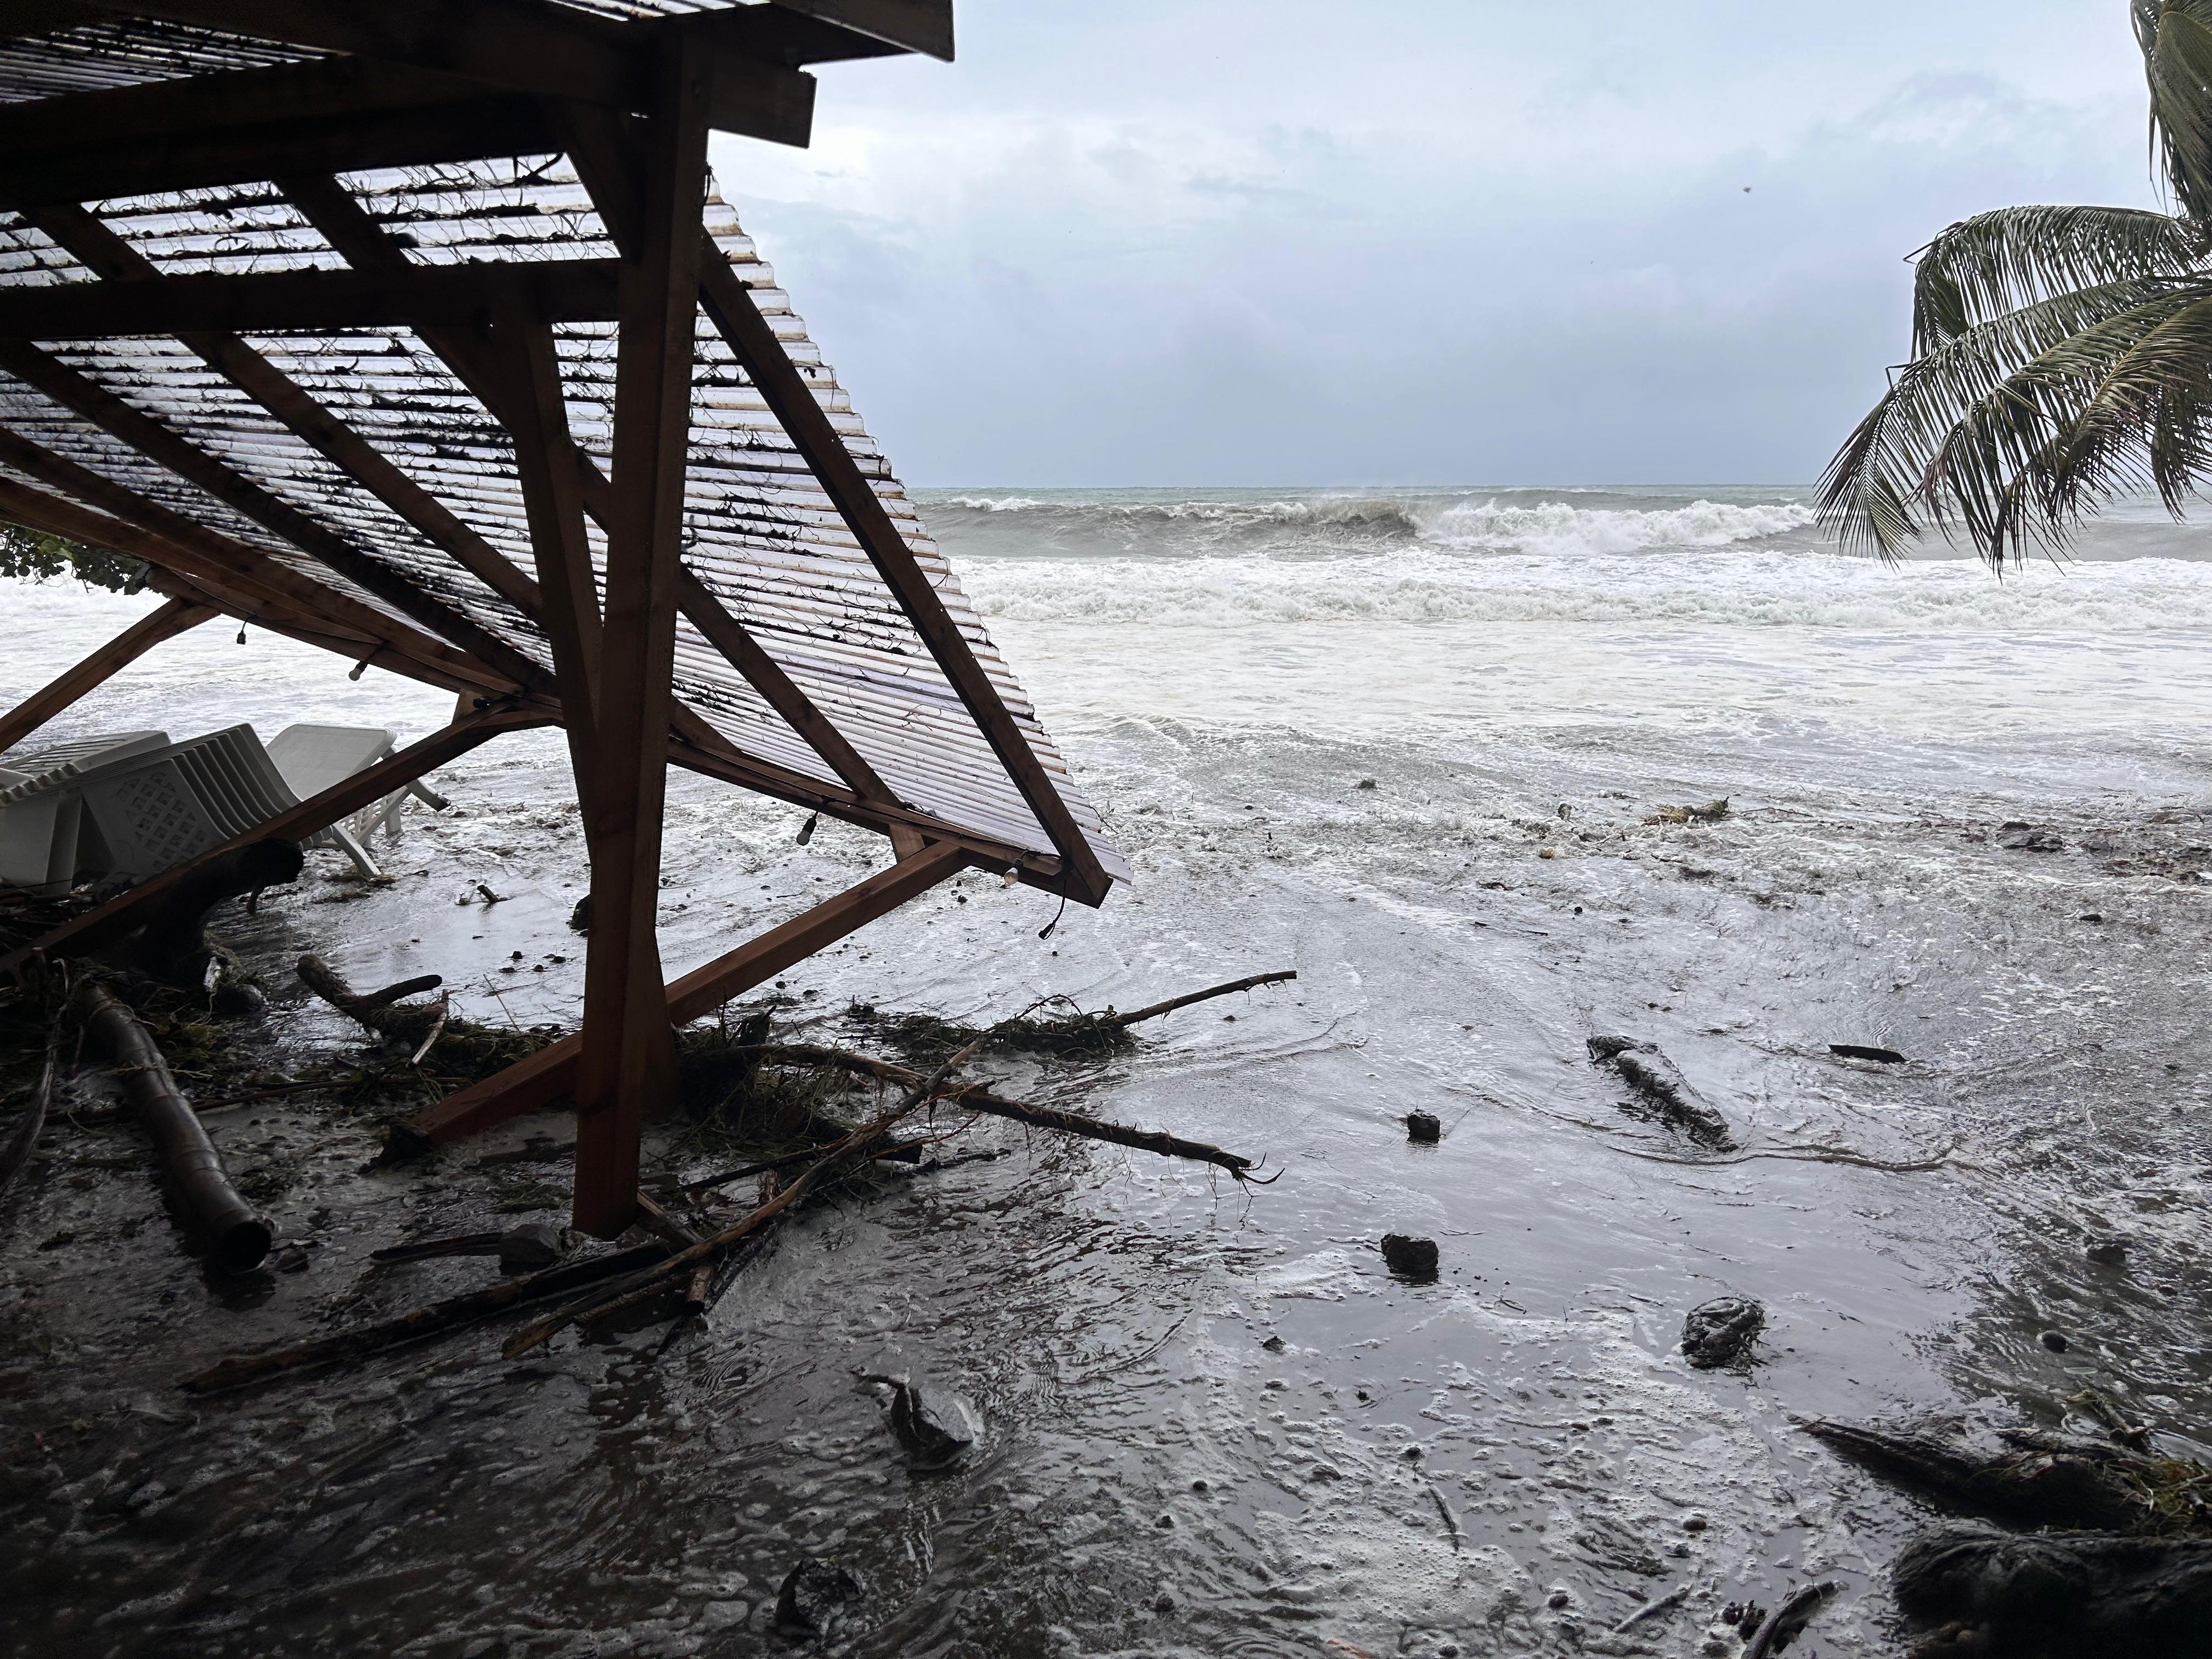     [EN IMAGES] L'Ouragan Béryl crée des remous dans le sud de la Martinique

